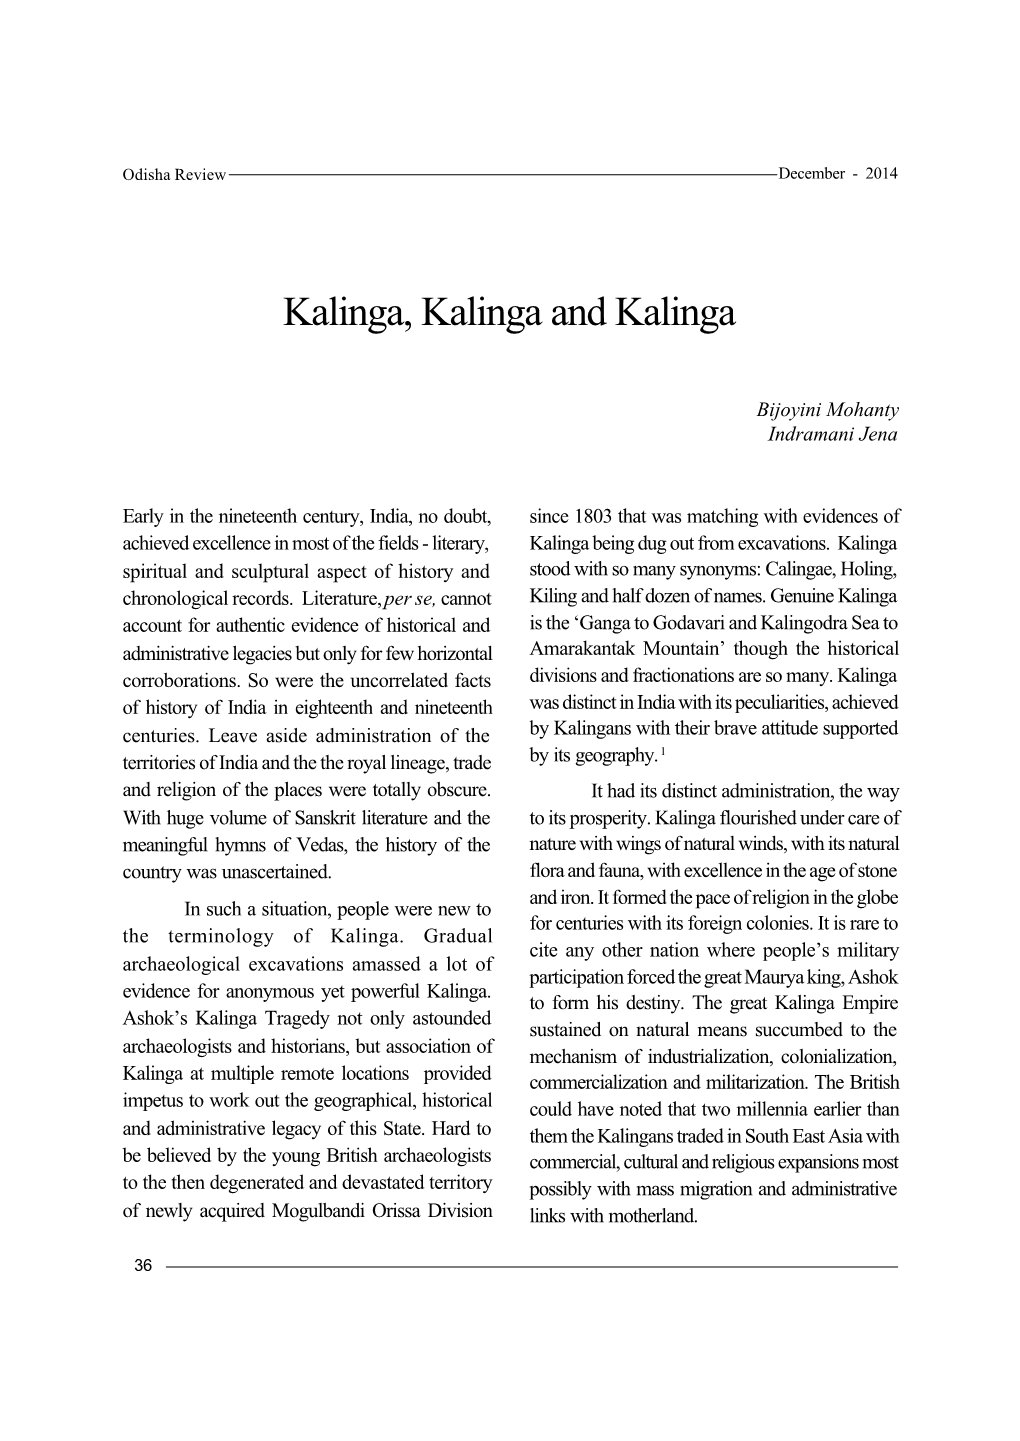 Kalinga, Kalinga and Kalinga